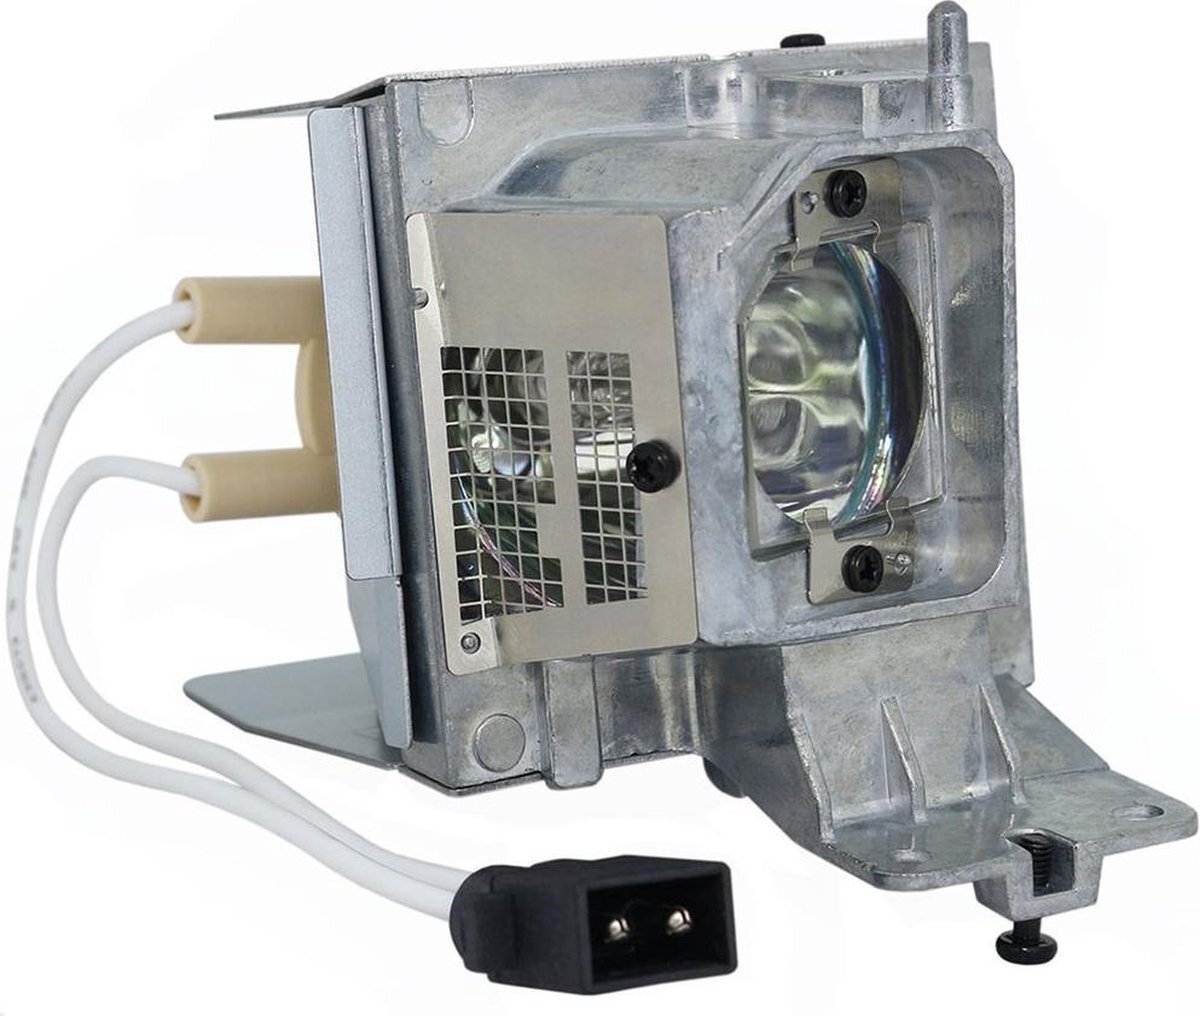 QualityLamp DELL 1650 beamerlamp LMP-1550 725-BBDR M7NWT, bevat originele UHP lamp. Prestaties gelijk aan origineel.